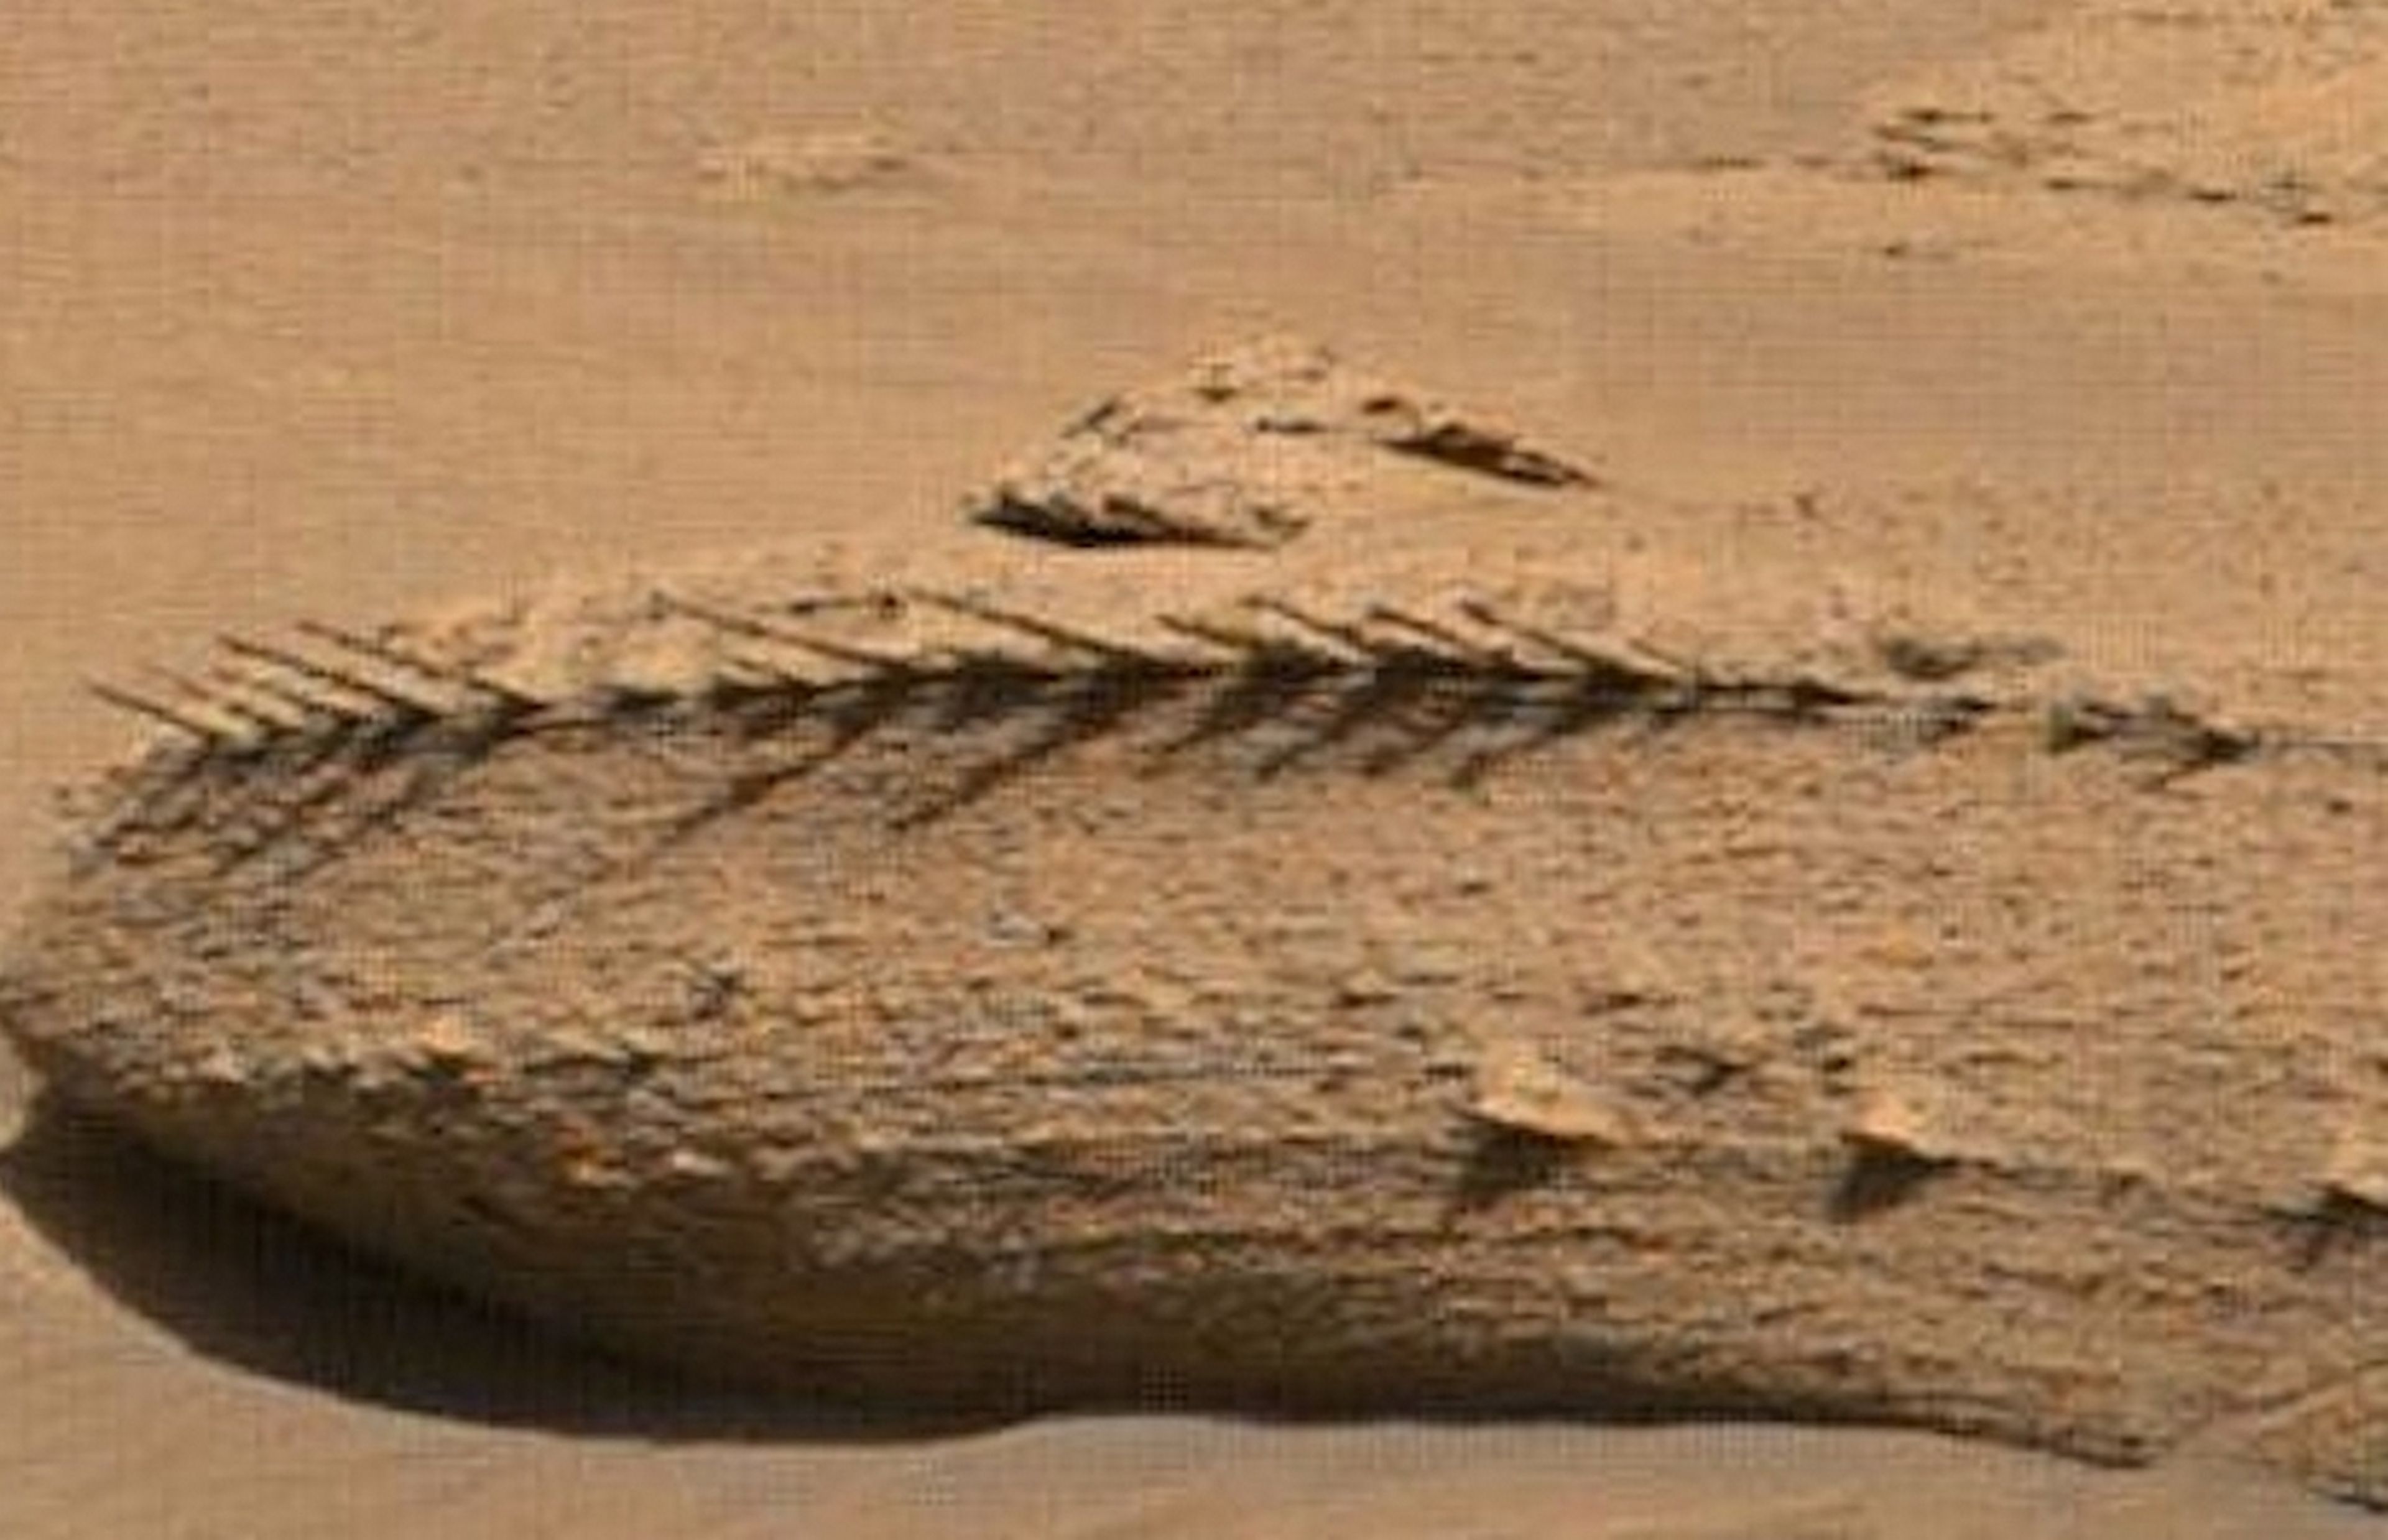 El rover Curiosity descubre un 'fósil' con espinas en Marte